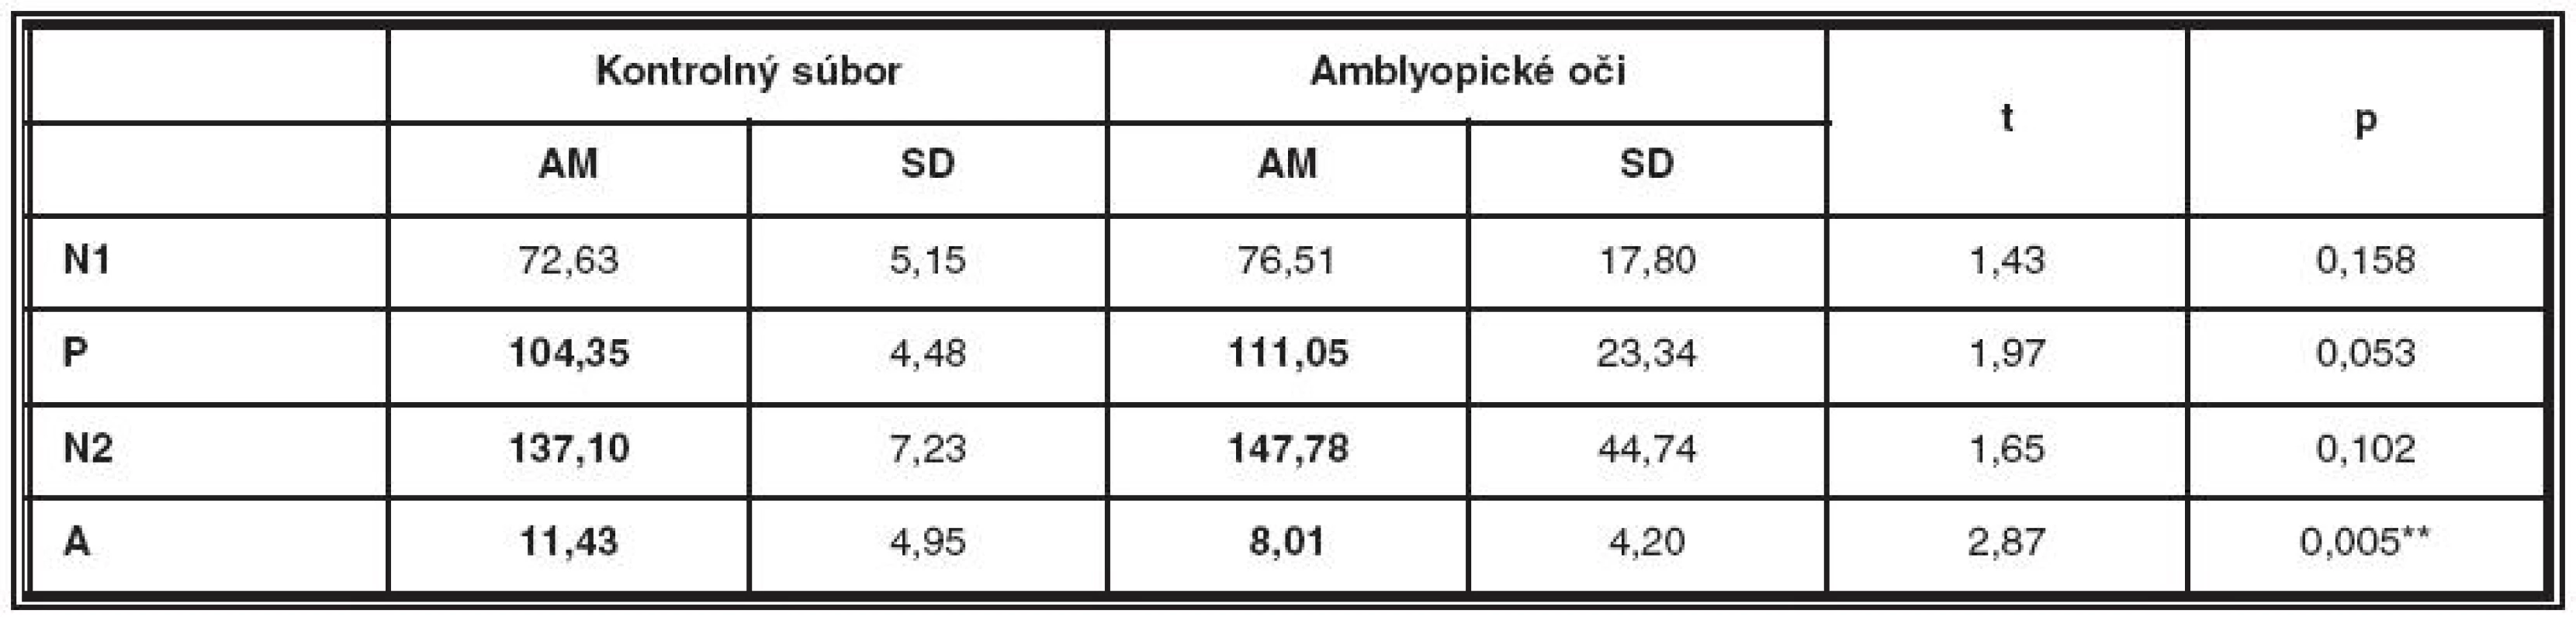 Porovnanie latencií a amplitúdy NPN komplexu kontrolného súboru a amblyopických očí v druhom meraní

